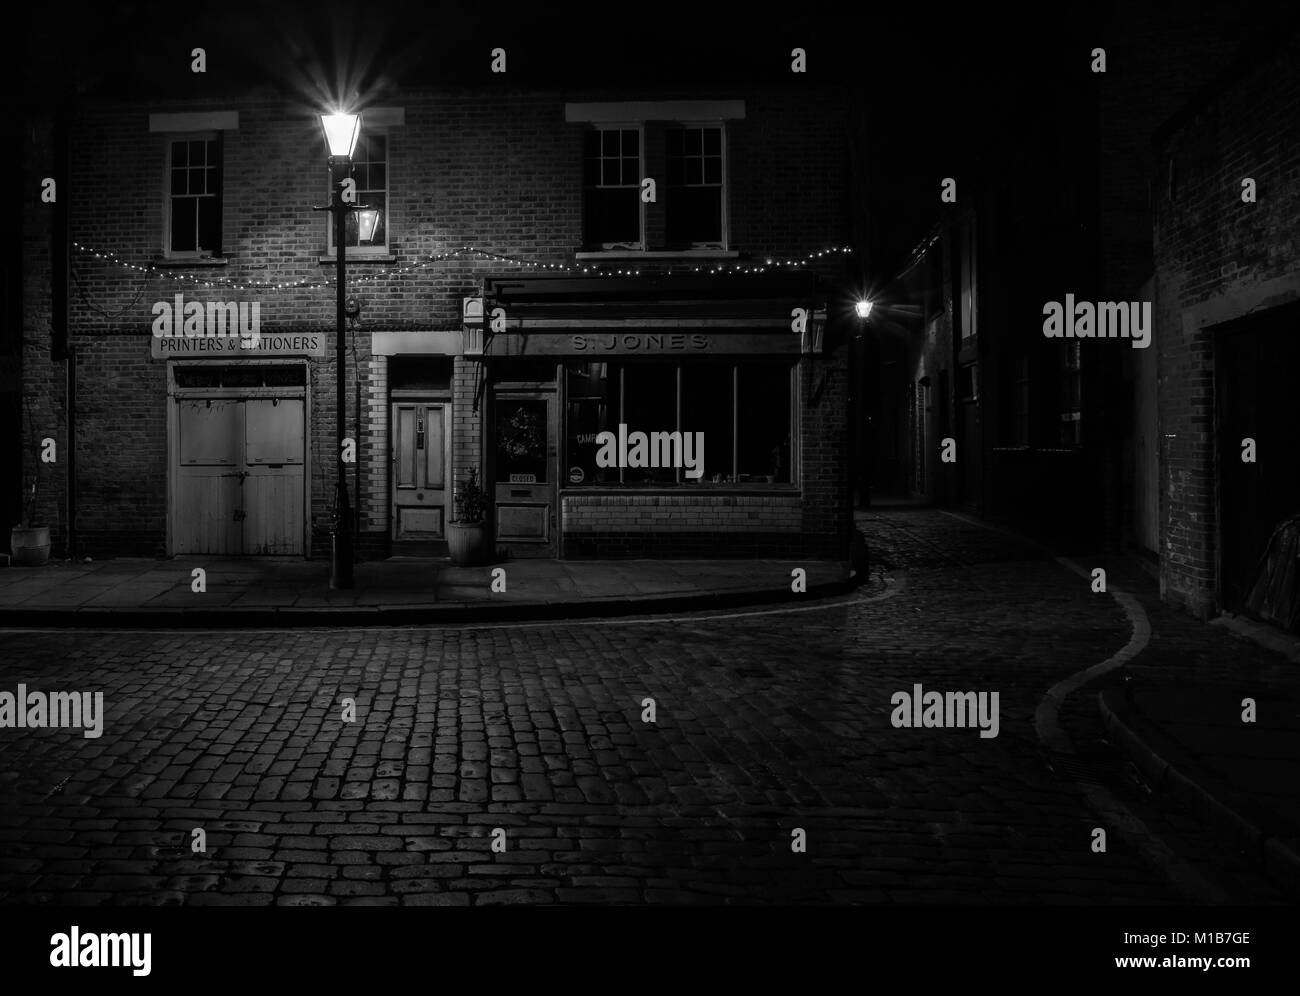 S. Jones cafe su Ezra Street, Londra, Regno Unito durante la notte con la strada di ciottoli e il cafe illuminato da una vecchia strada lampada. Foto Stock